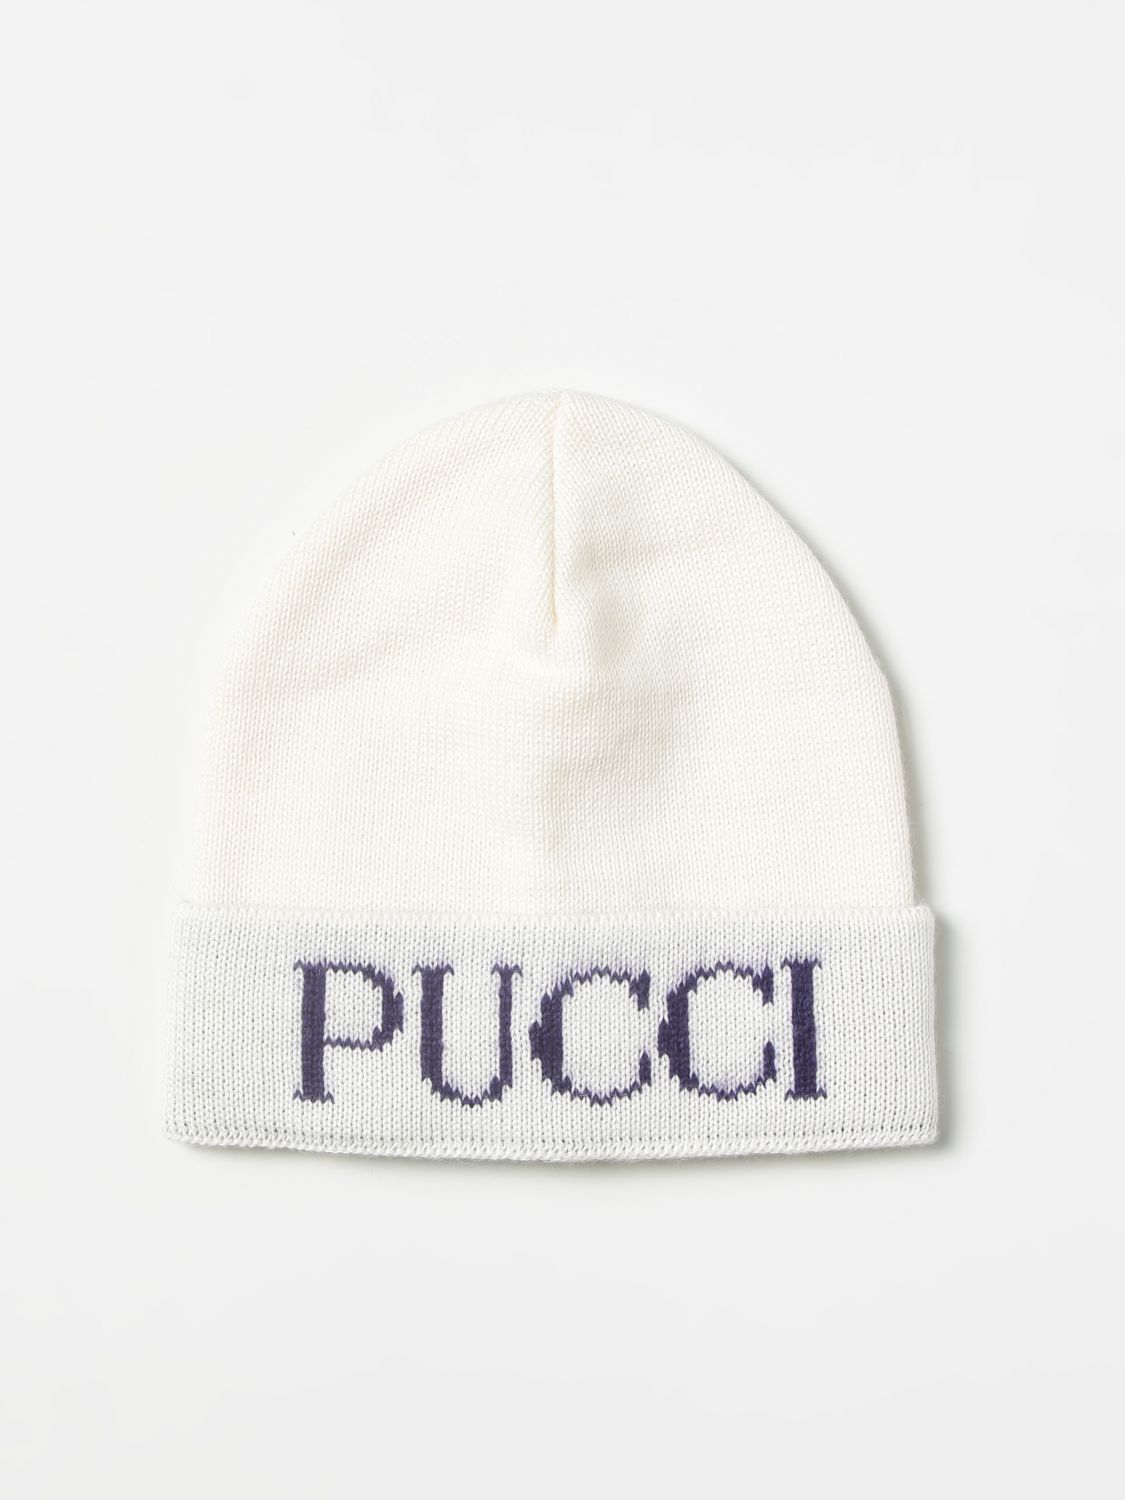 Chapeaux Fille Emilio Pucci: Chapeau Emilio Pucci avec logo incrusté ivoir 1